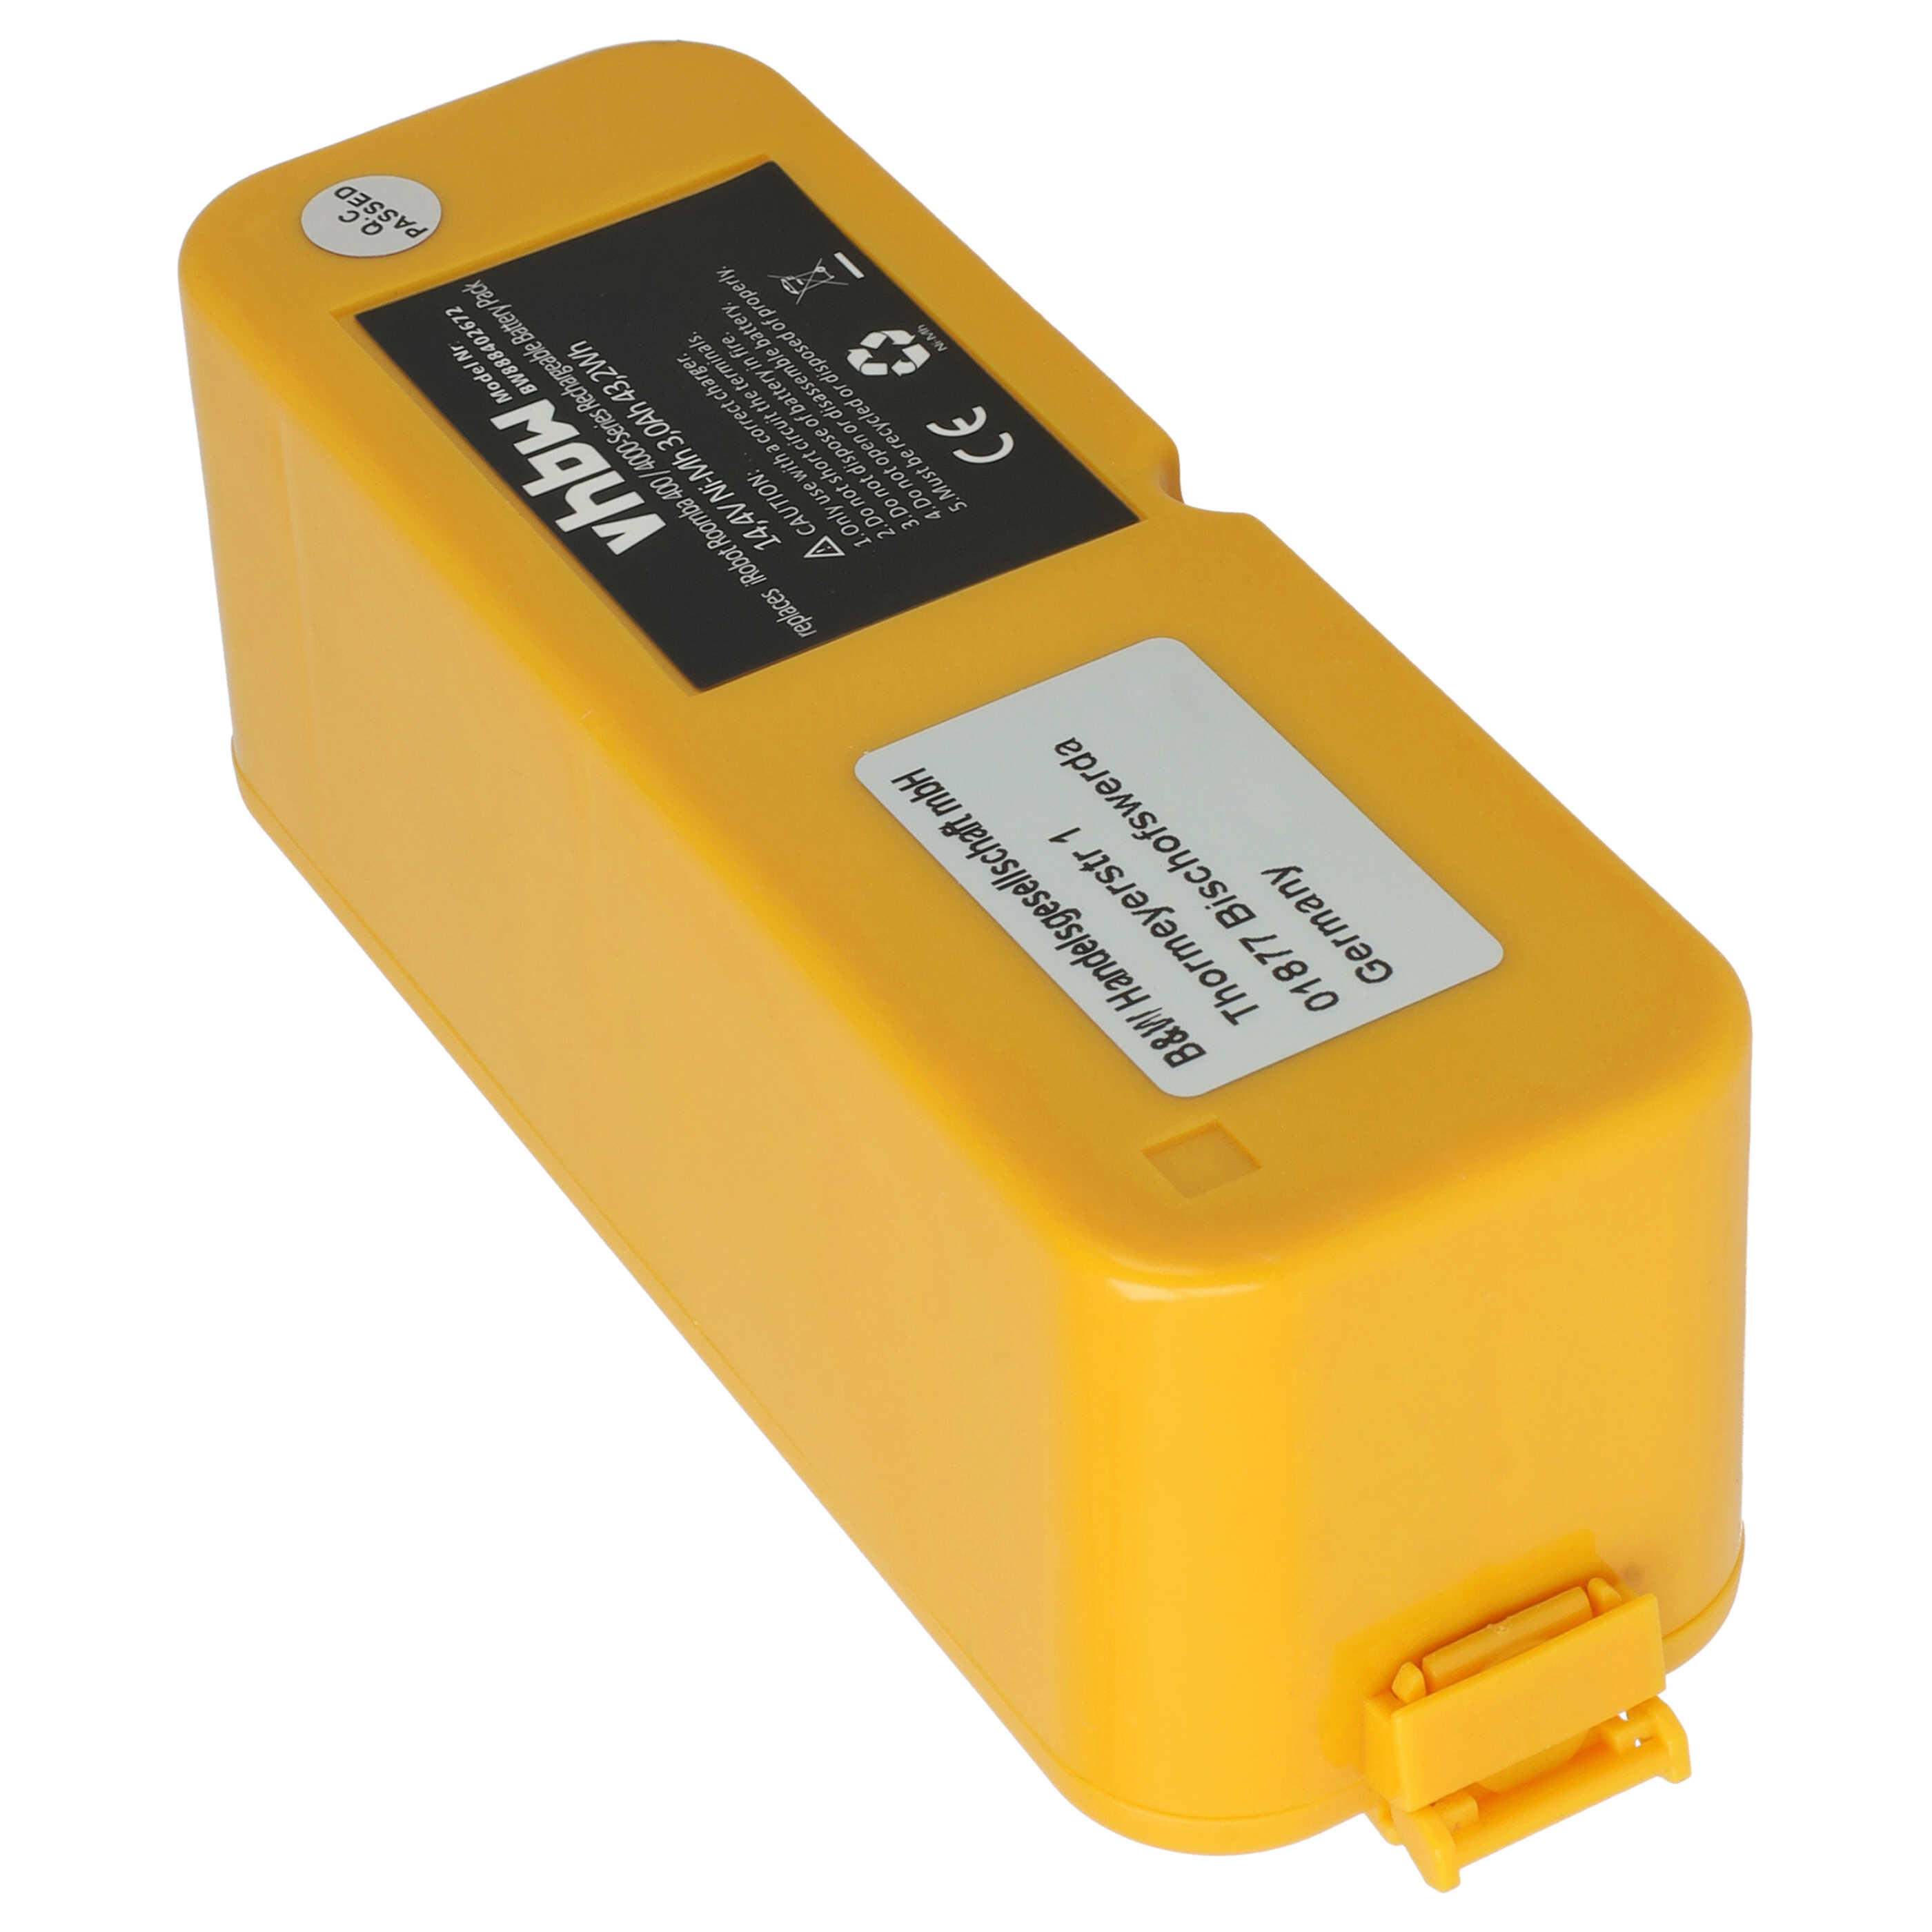 Batteria sostituisce APS 4905, NC-3493-919, 11700, 17373 per aspirapolvere iRobot - 3000mAh 14,4V NiMH giallo